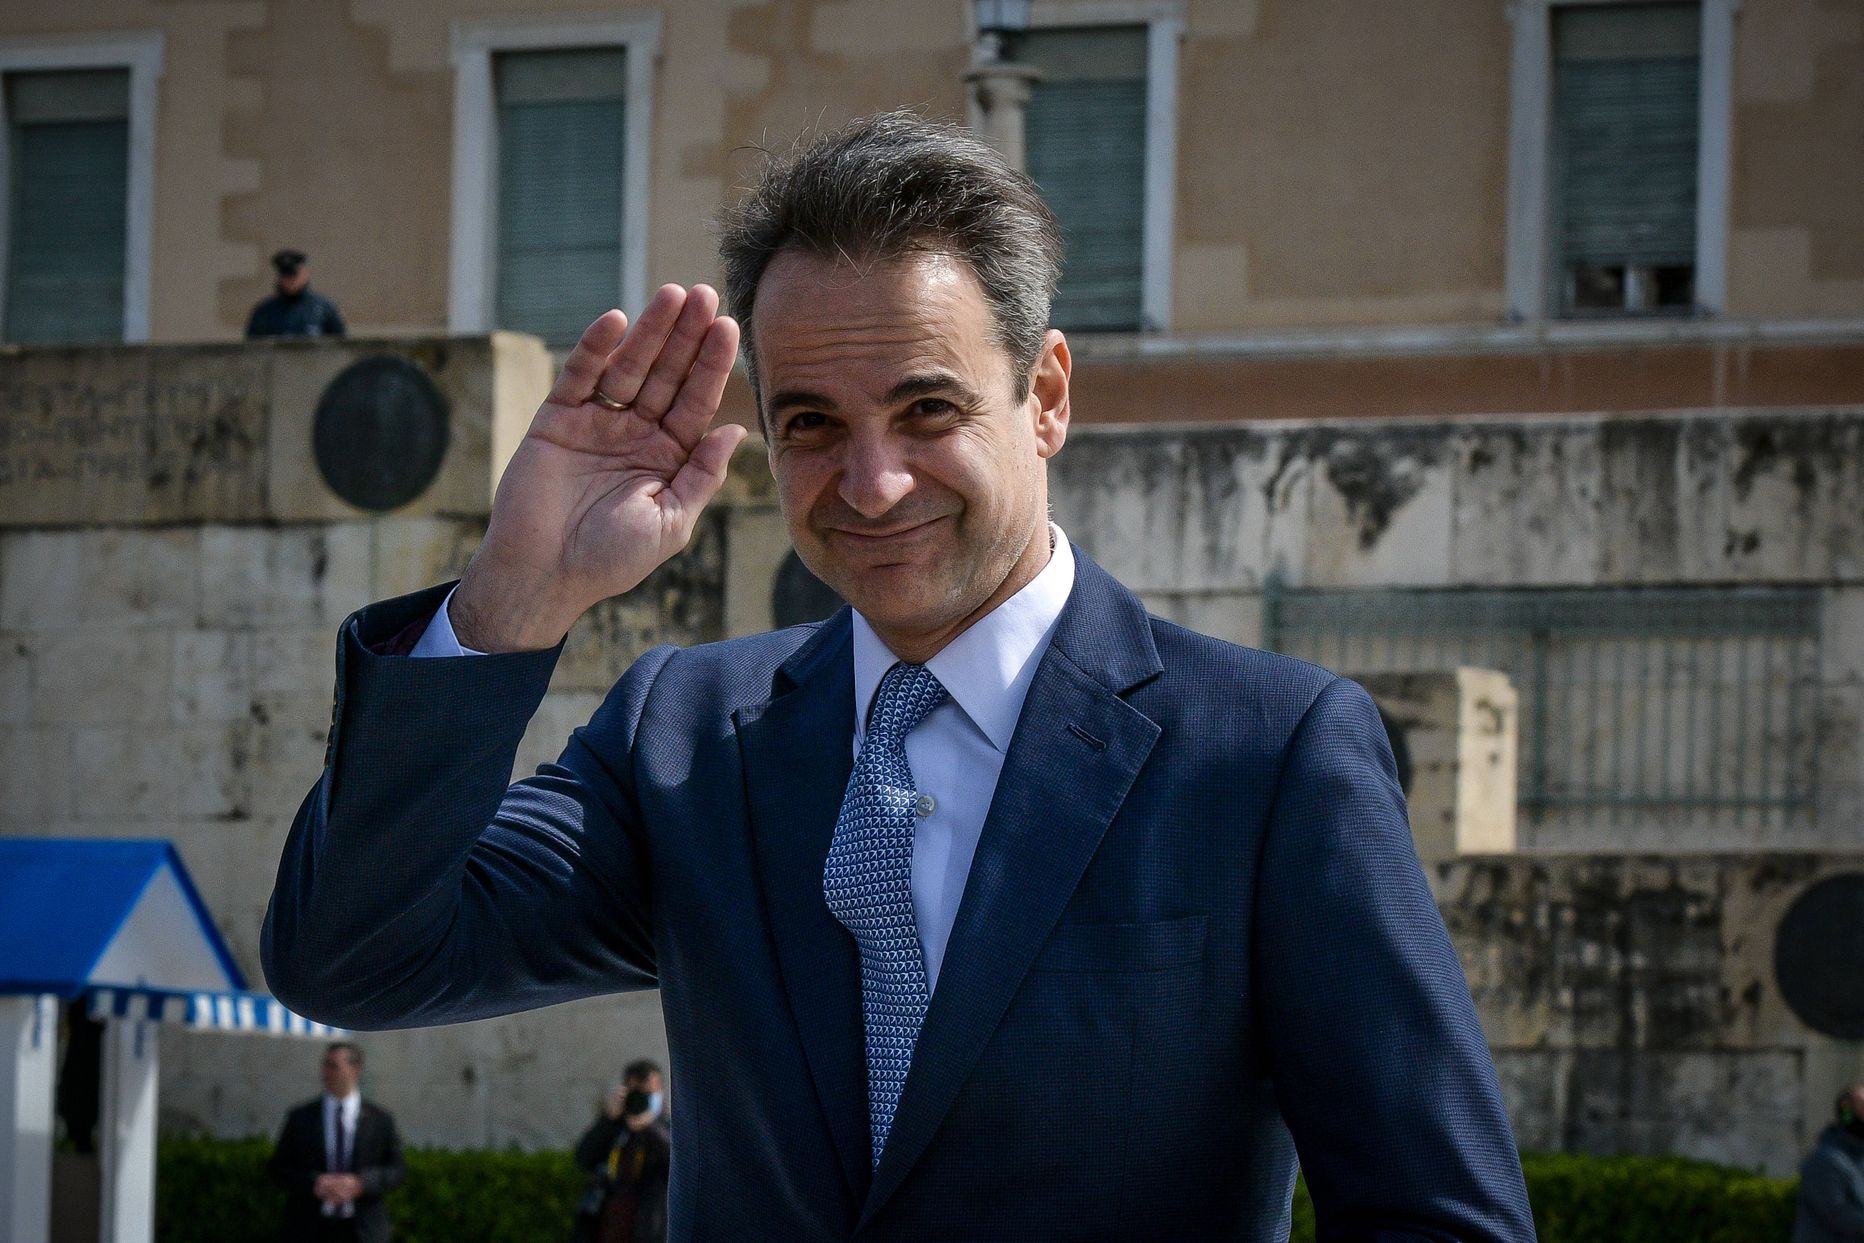 Kreeka peaminister Kyriákos Mitsotákis kutsus üles oma valitsust ning ka oma erakonda kuuluvaid parlamendiliikmeid loobuma poolest oma palgast.